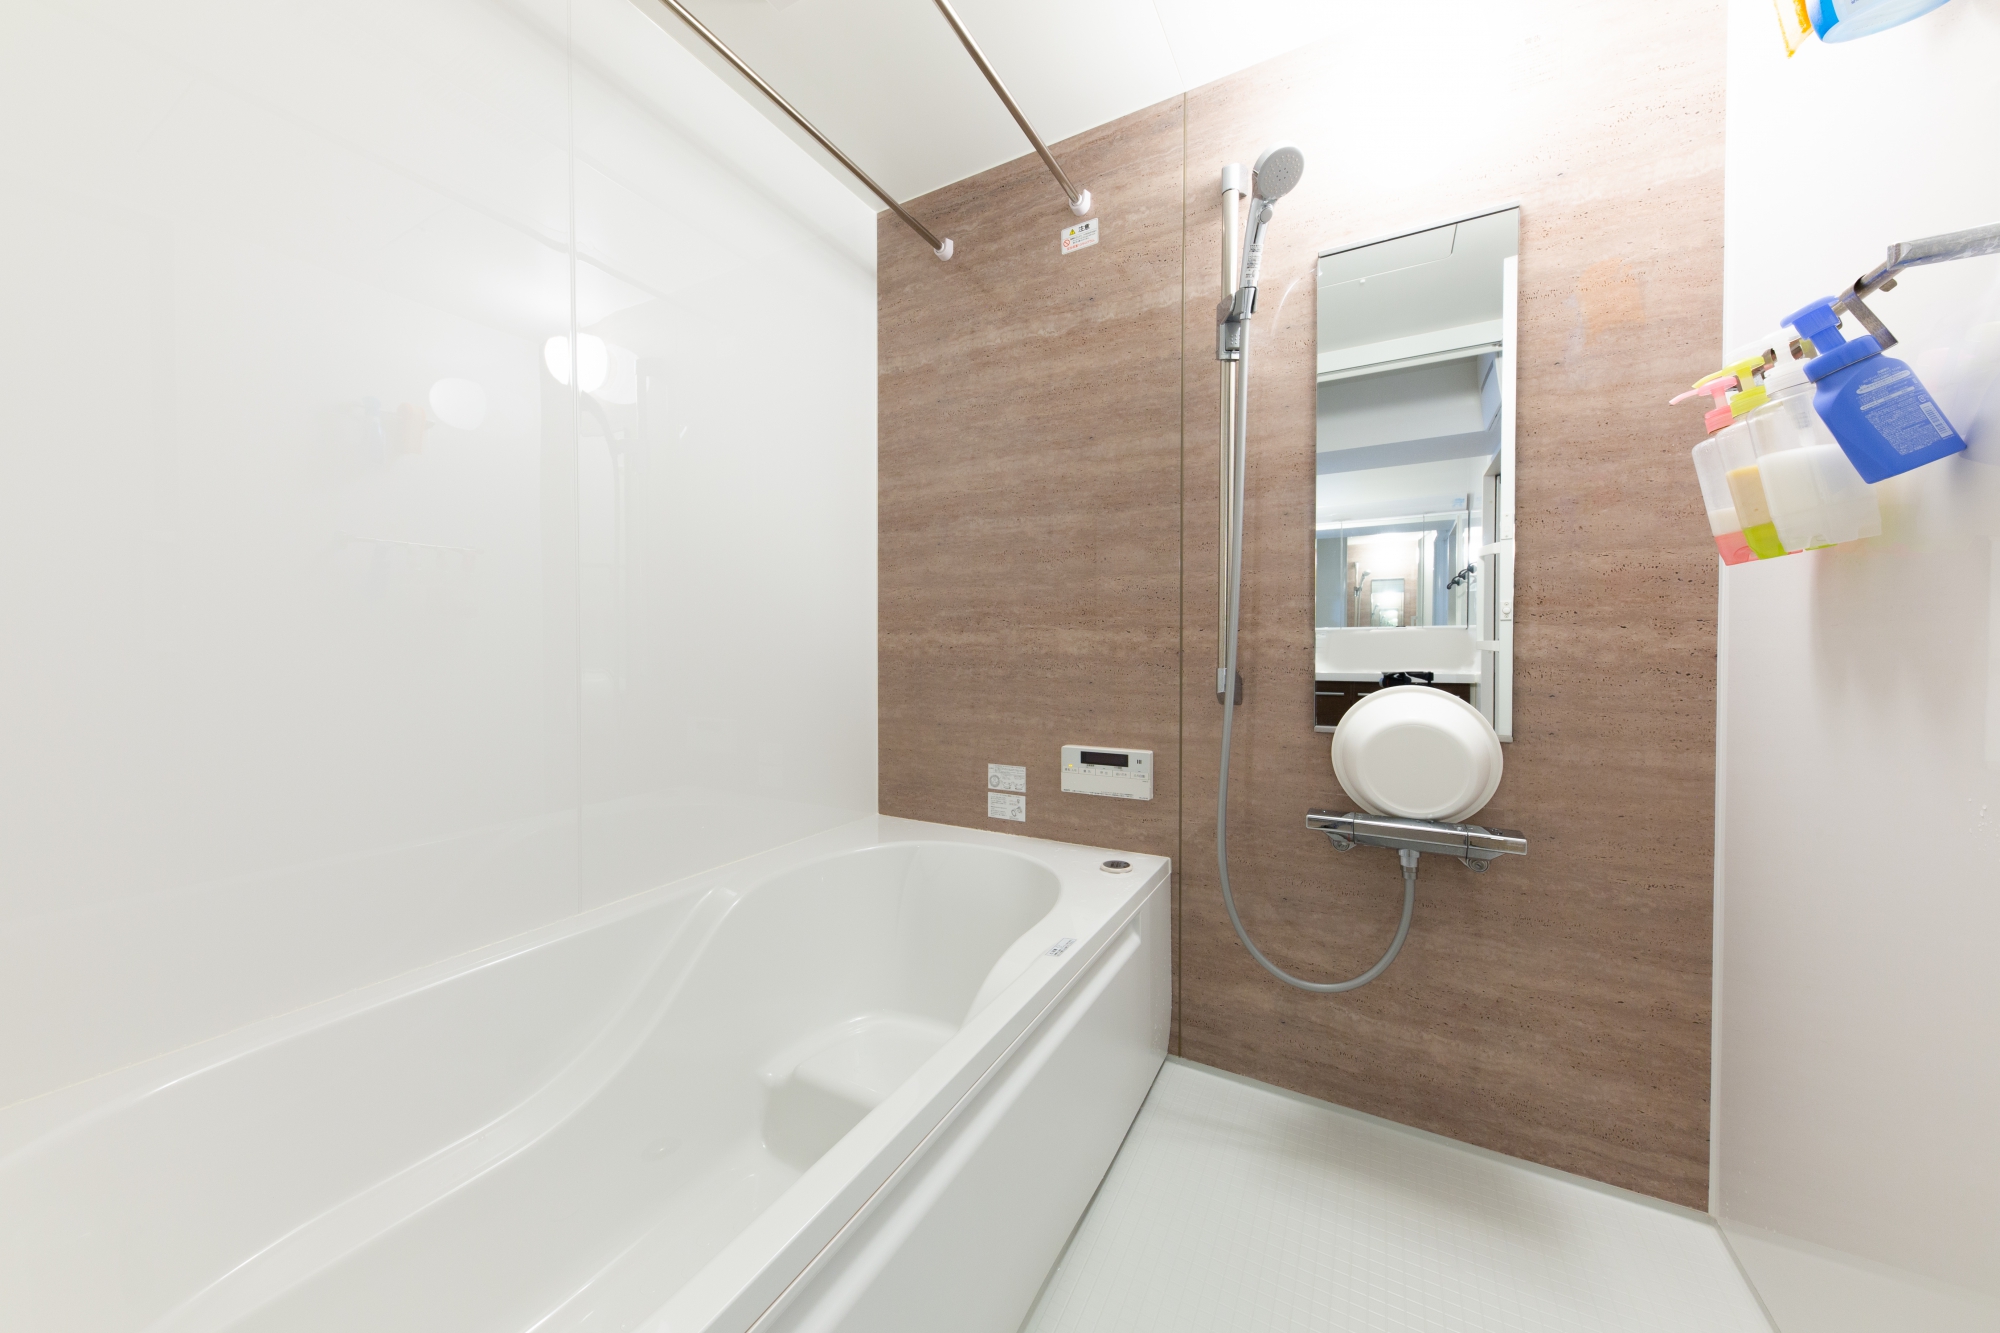 After
浴室はノーリツ製の最先端モデルで、浴槽を自動洗浄してくれます。